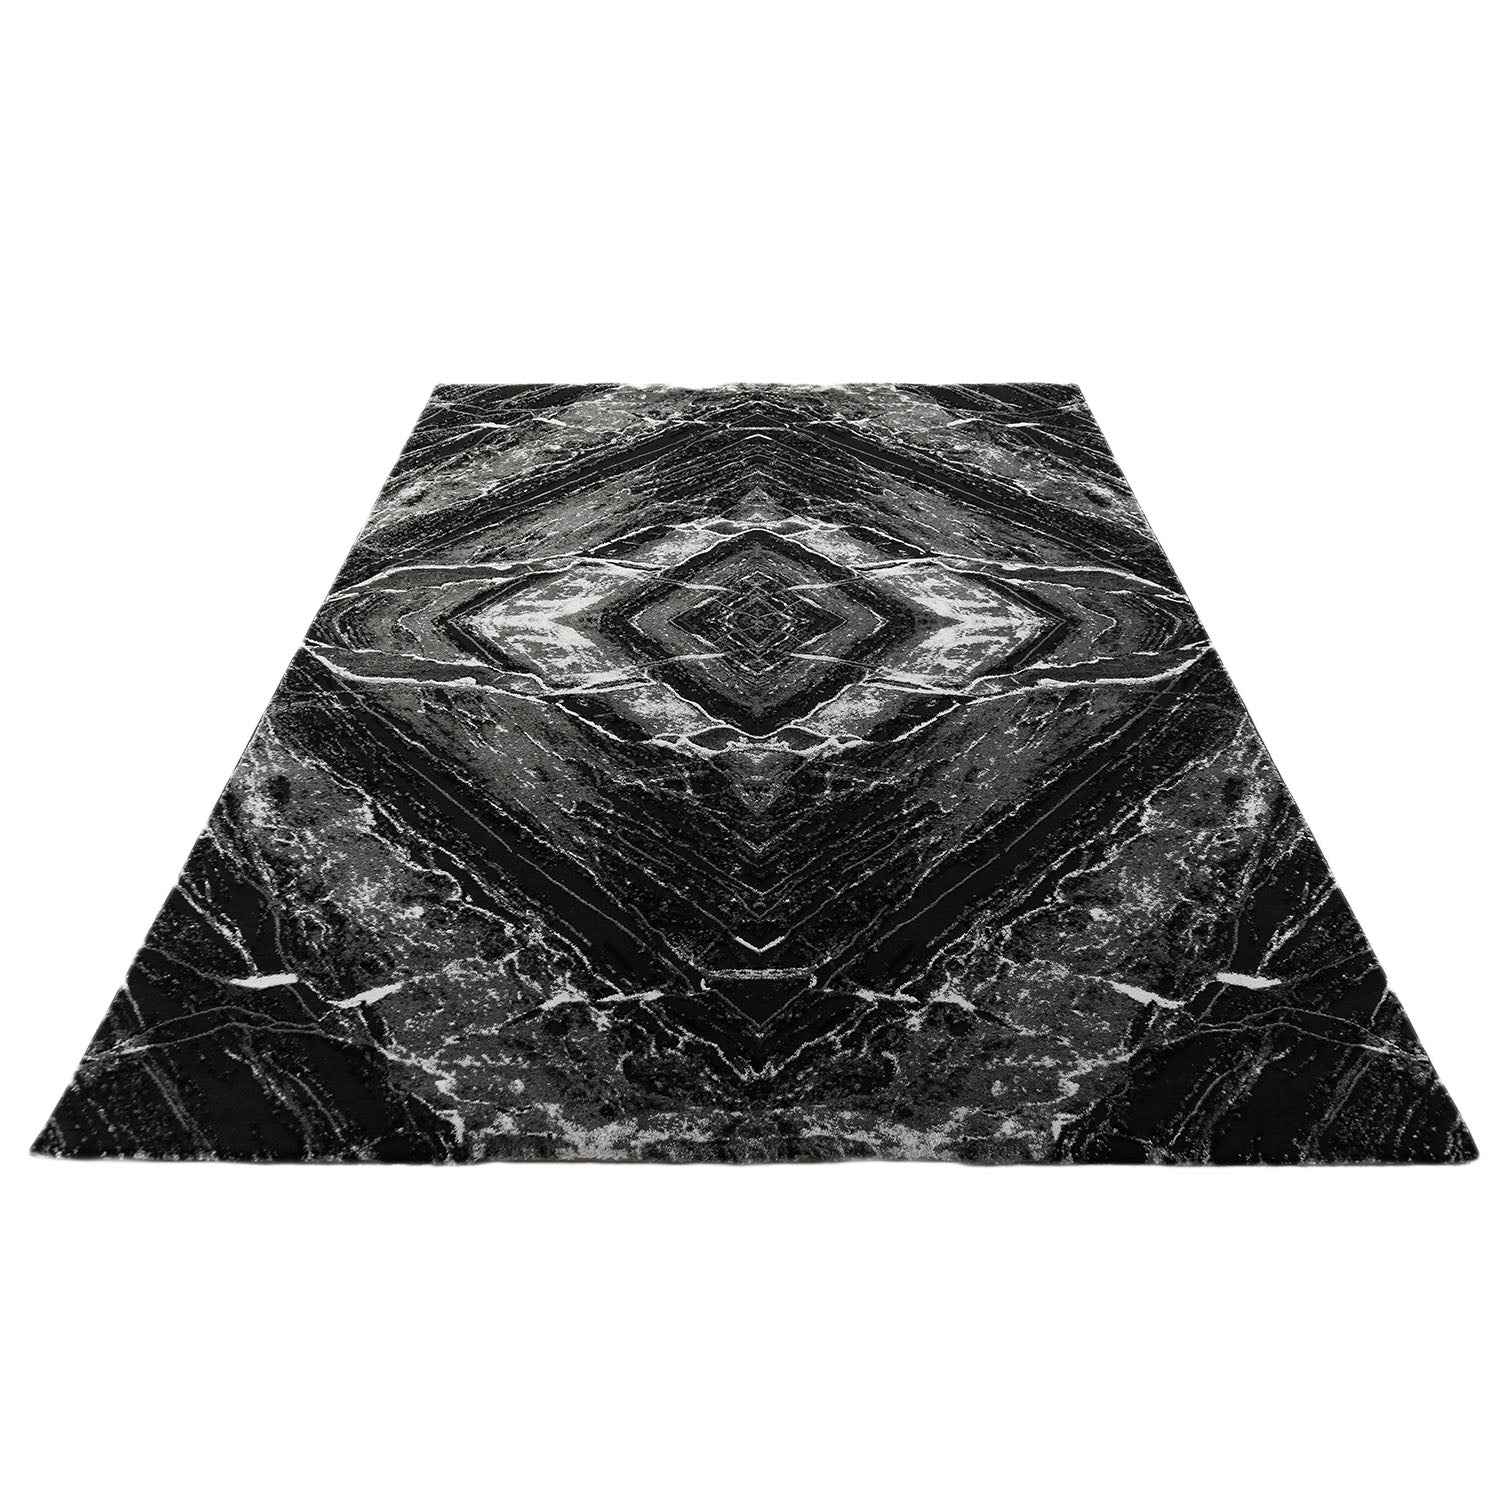 Vloerkleed Craft deluxe marmer patroon 50013 zwart grijs